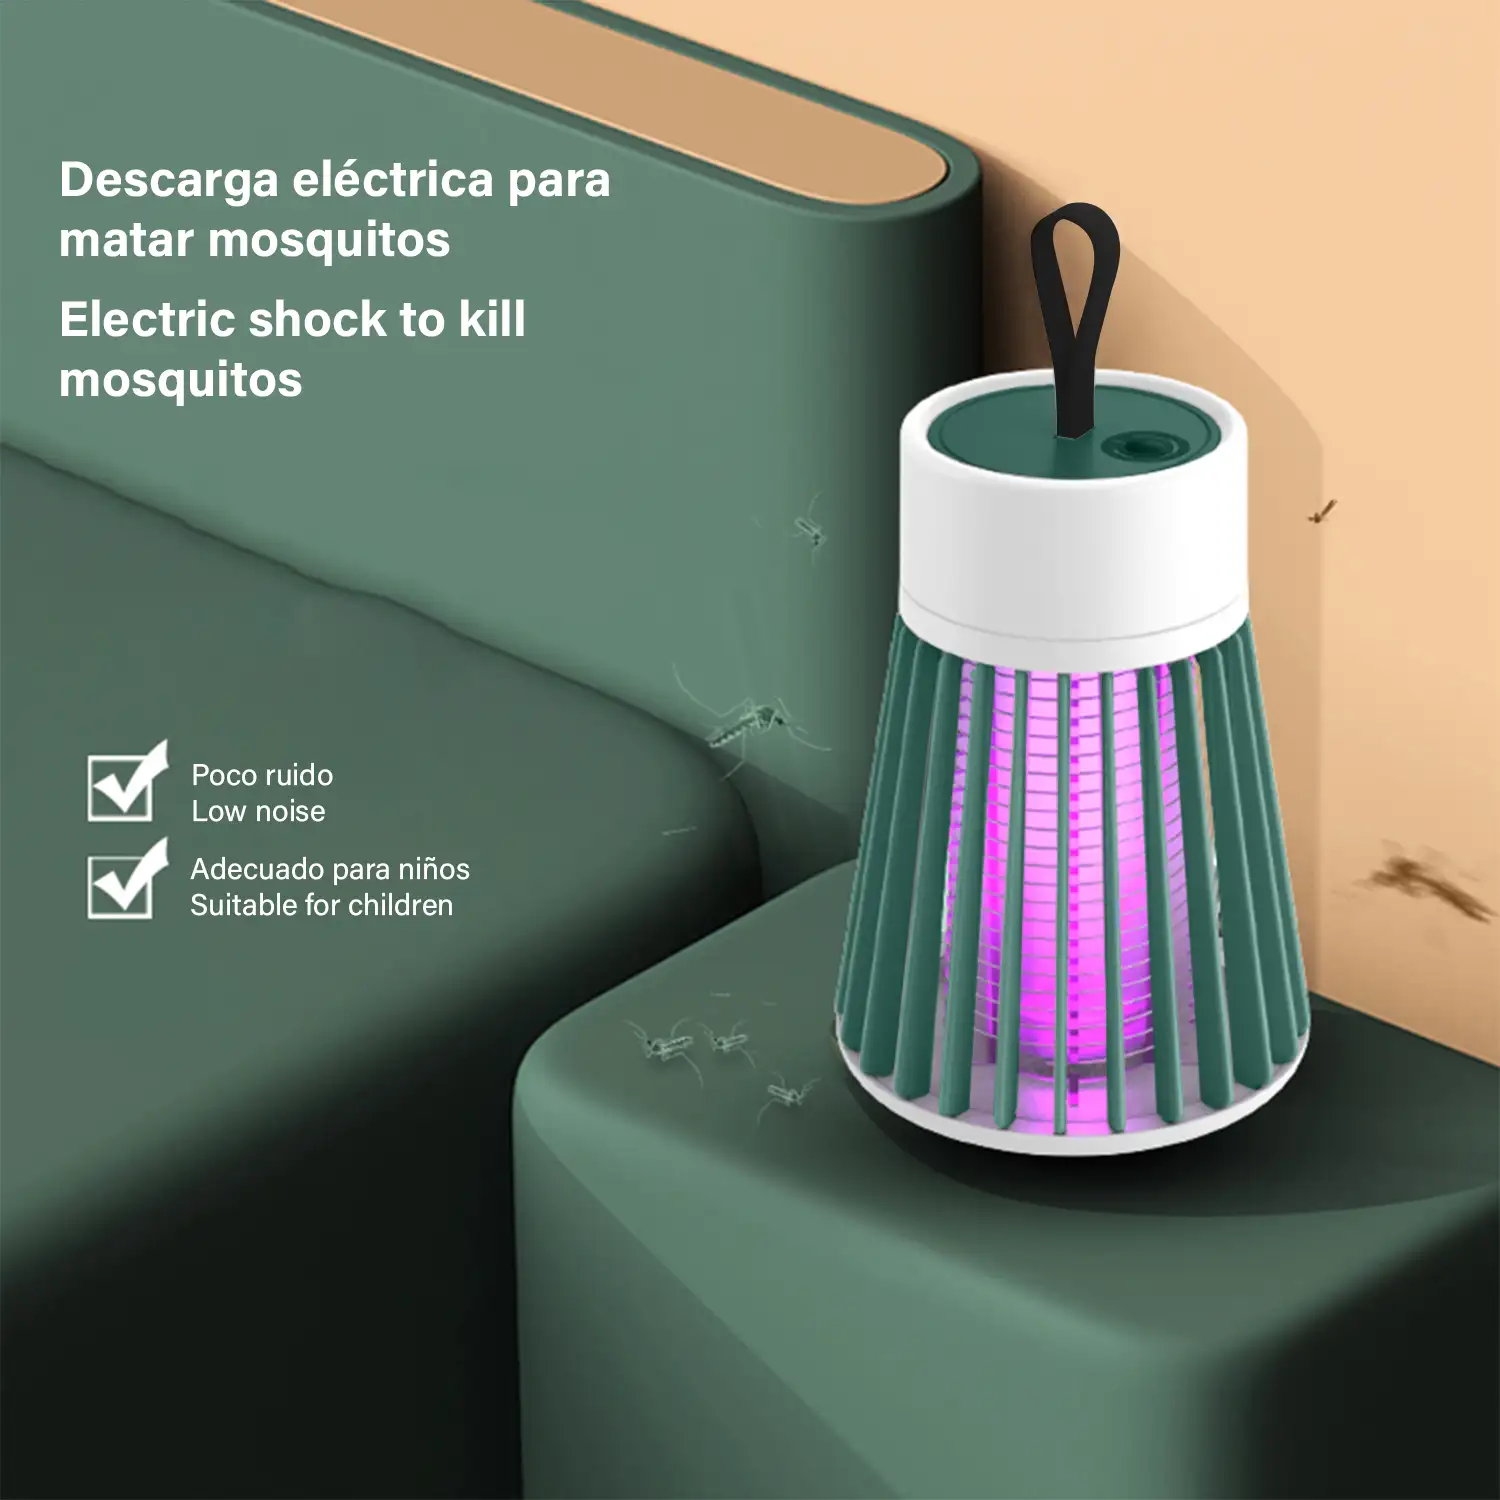 Atrapa mosquitos eléctrico BG-002 portátil con batería. Luz de 365 NM para atrapar mosquitos.